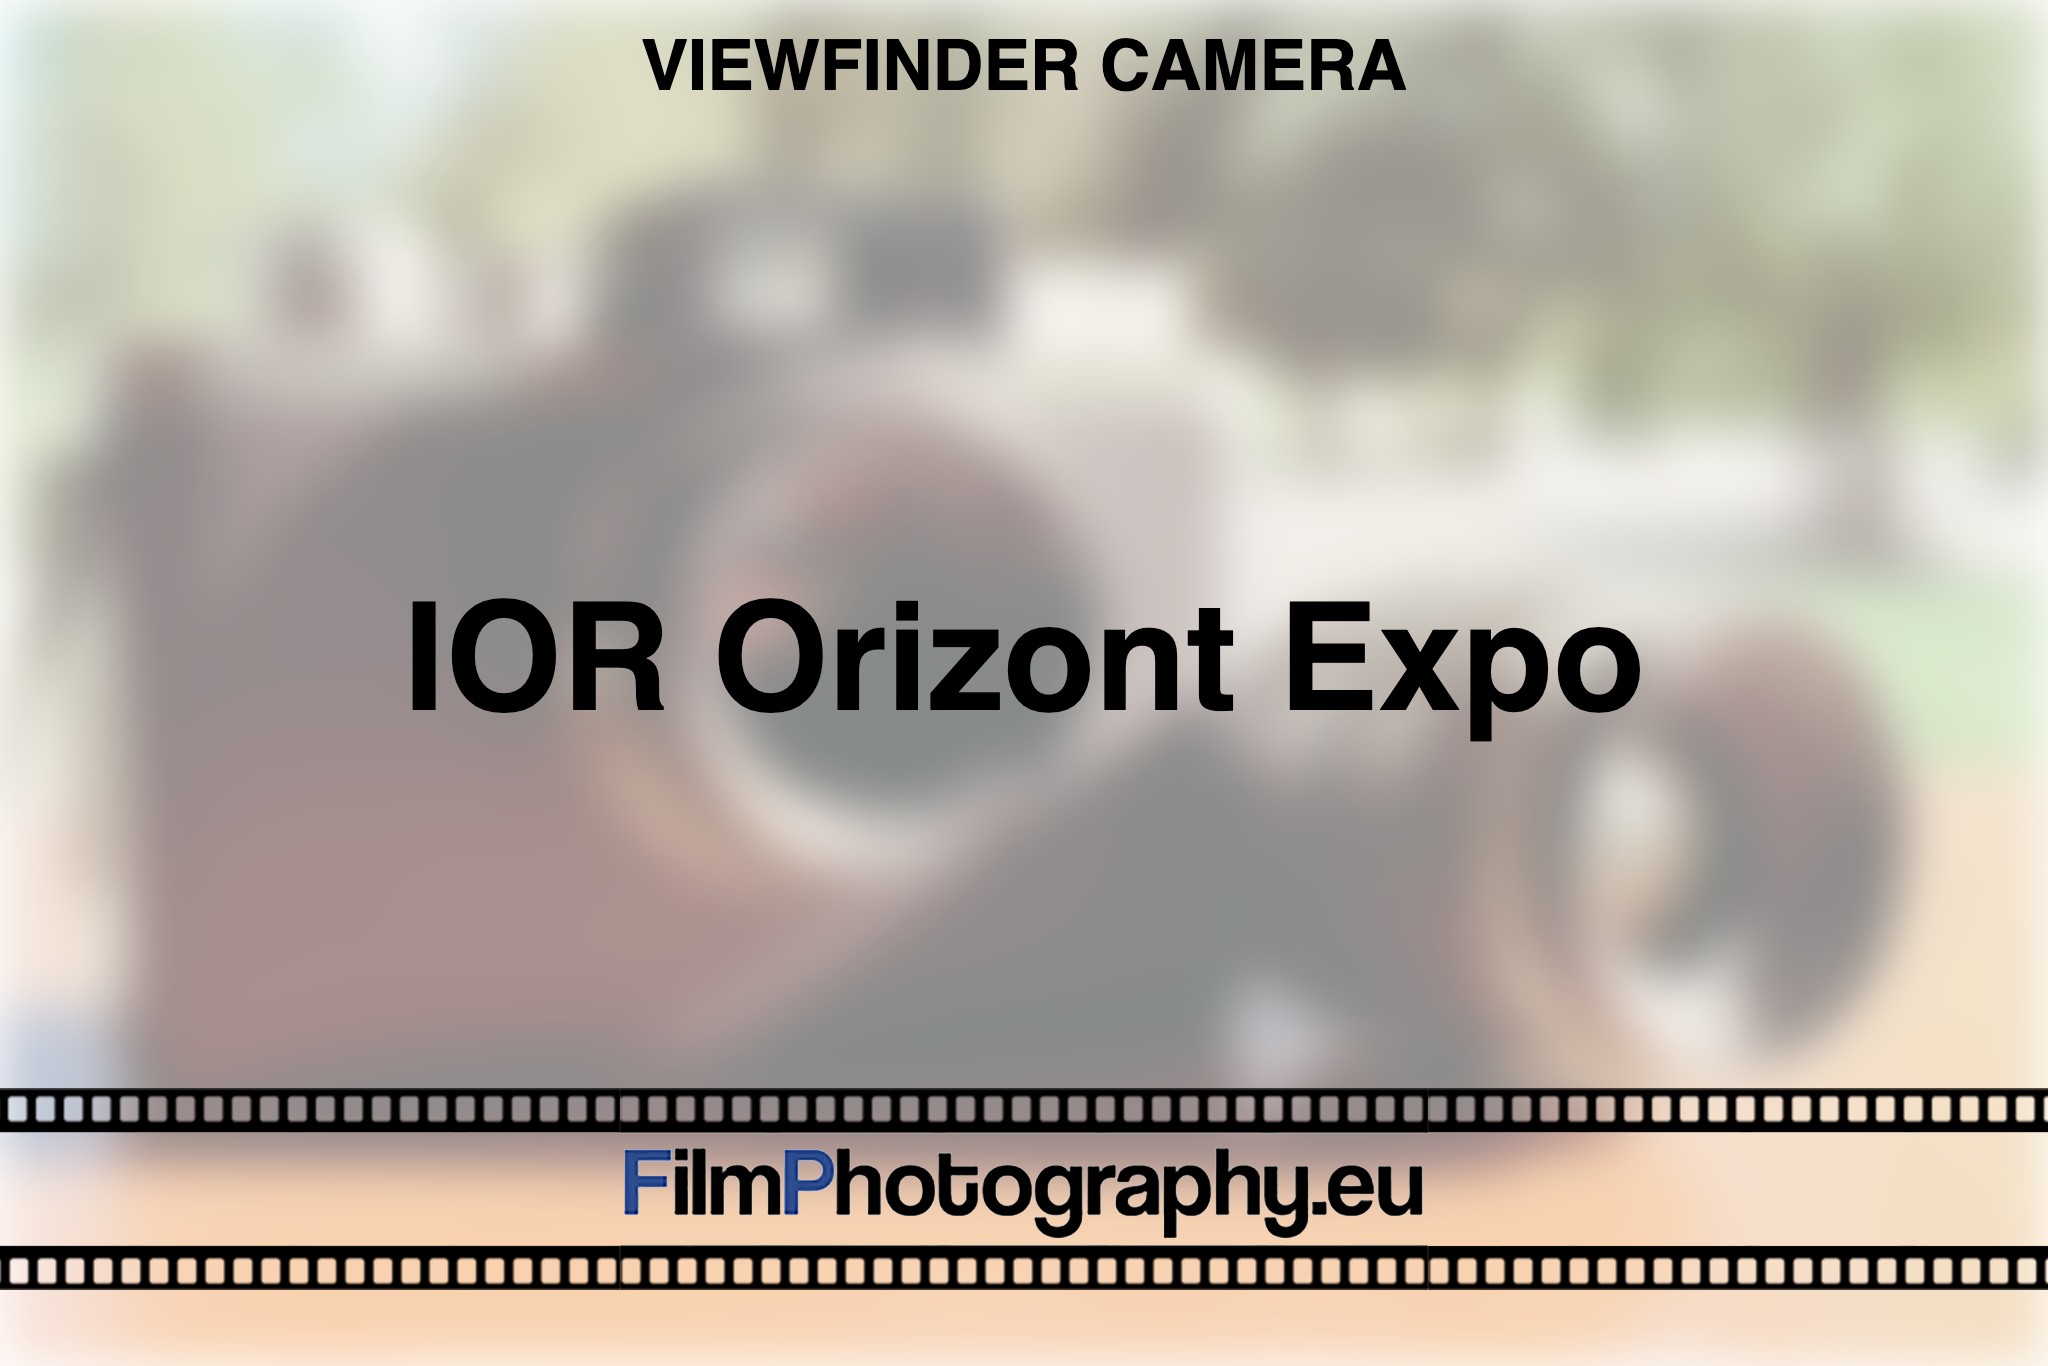 ior-orizont-expo-viewfinder-camera-bnv